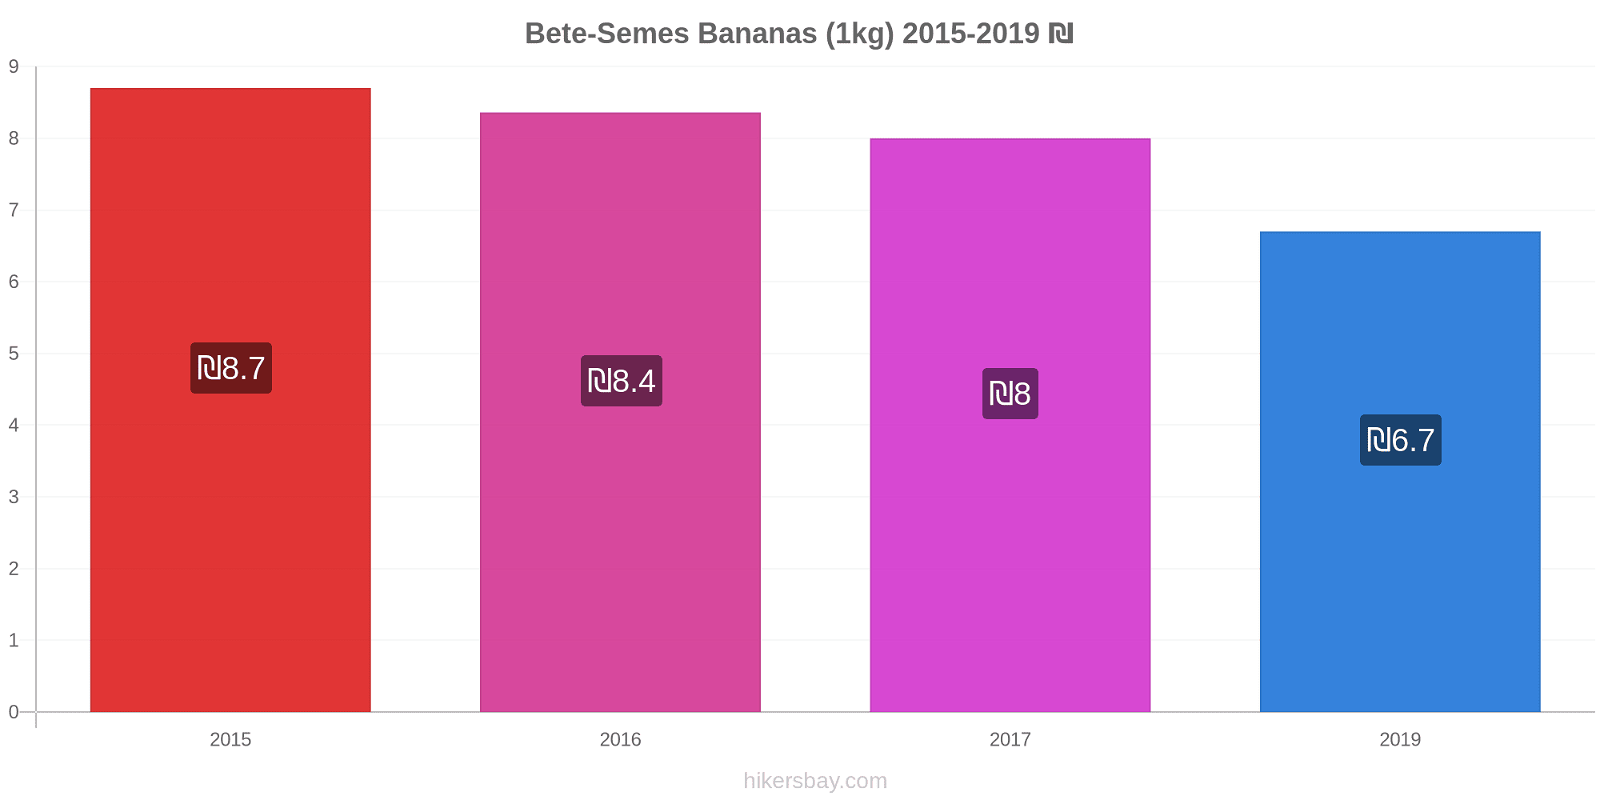 Bete-Semes variação de preço Banana (1kg) hikersbay.com